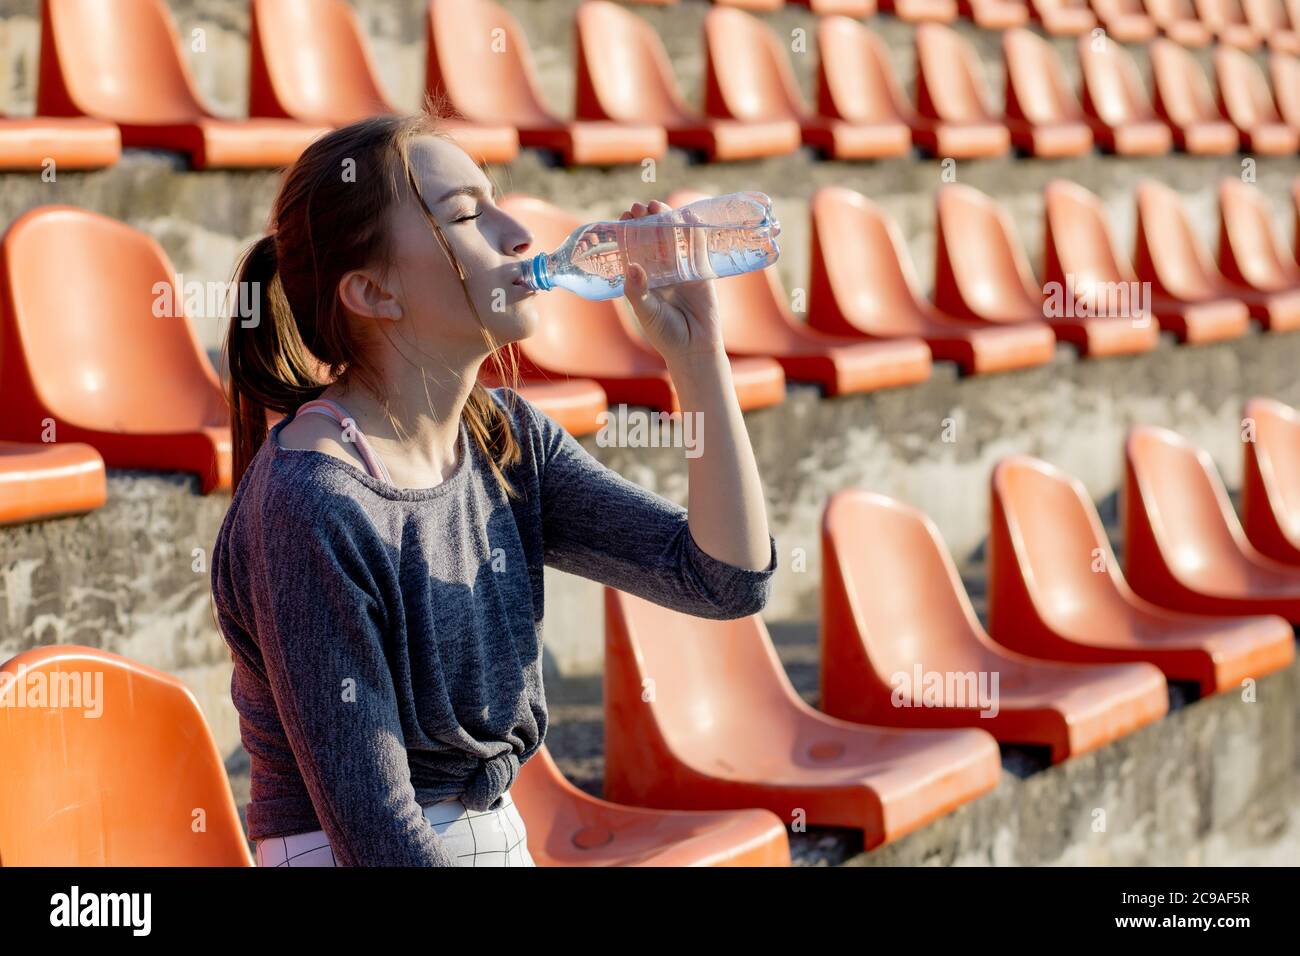 Sportliche junge attraktive Mädchen in Sportbekleidung entspannen nach hartem Training sitzen und trinken Wasser aus speziellen Sportflasche nach dem Laufen auf einem Stadion Stockfoto